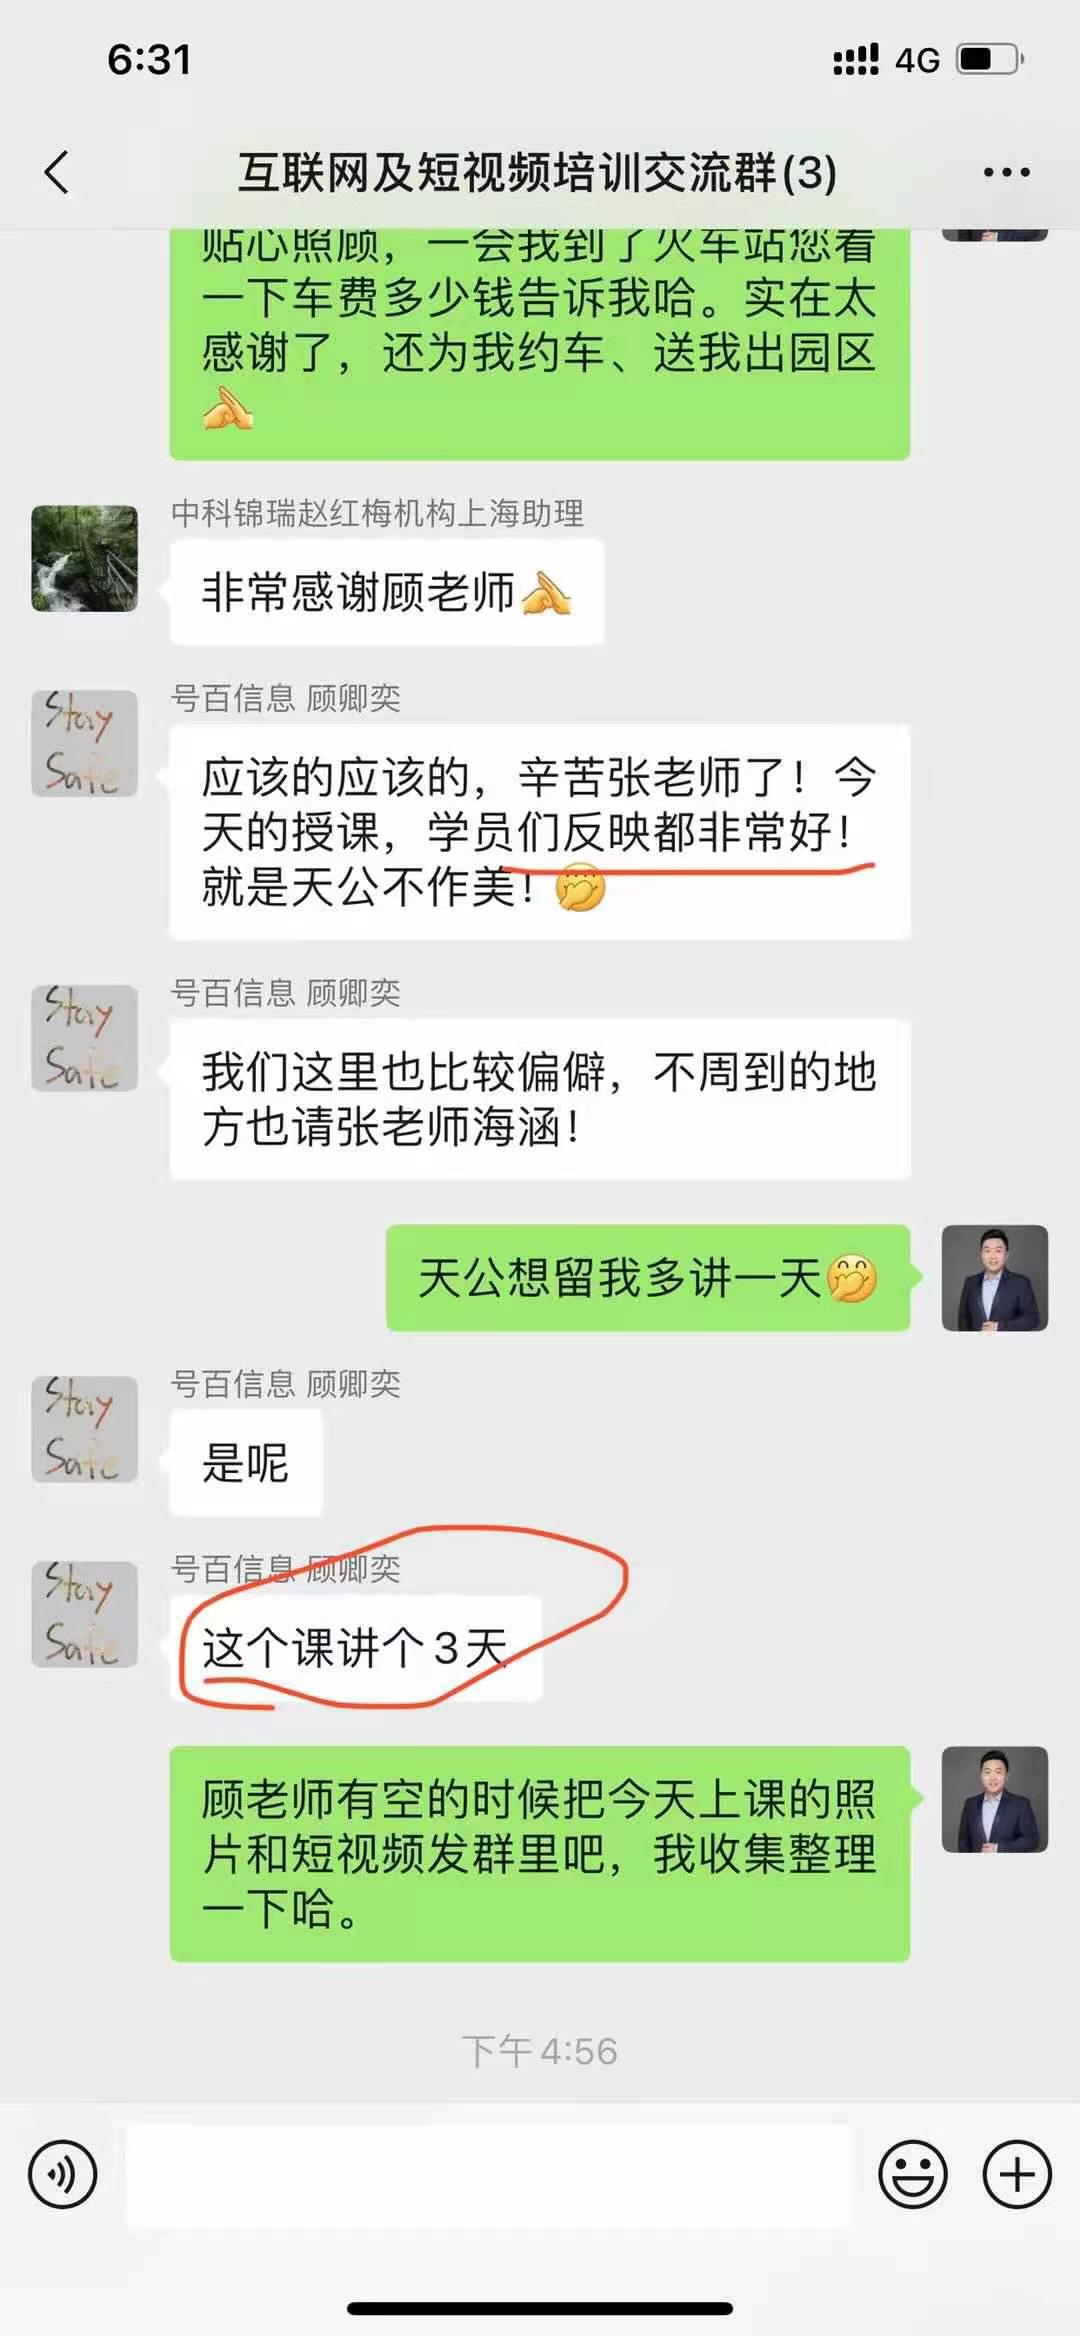 张远老师7月29日受中国电信邀请赴上海为其讲授《互联网营销背景下的营销变现及短视频运营》